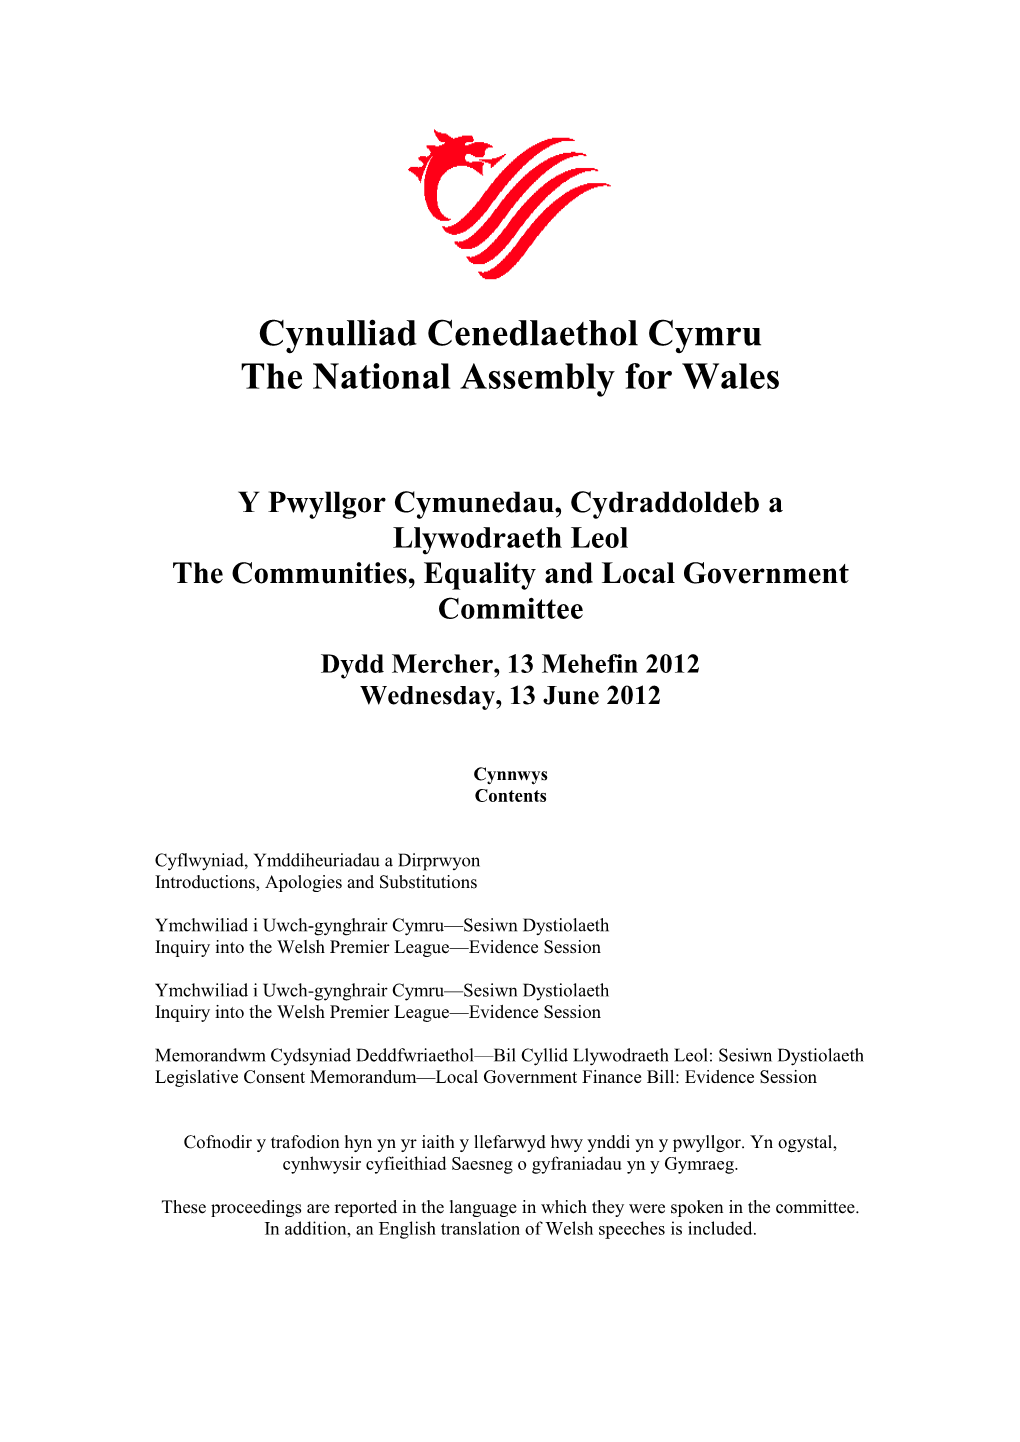 Ymchwiliad I Uwch-Gynghrair Cymru—Sesiwn Dystiolaeth Inquiry Into the Welsh Premier League—Evidence Session